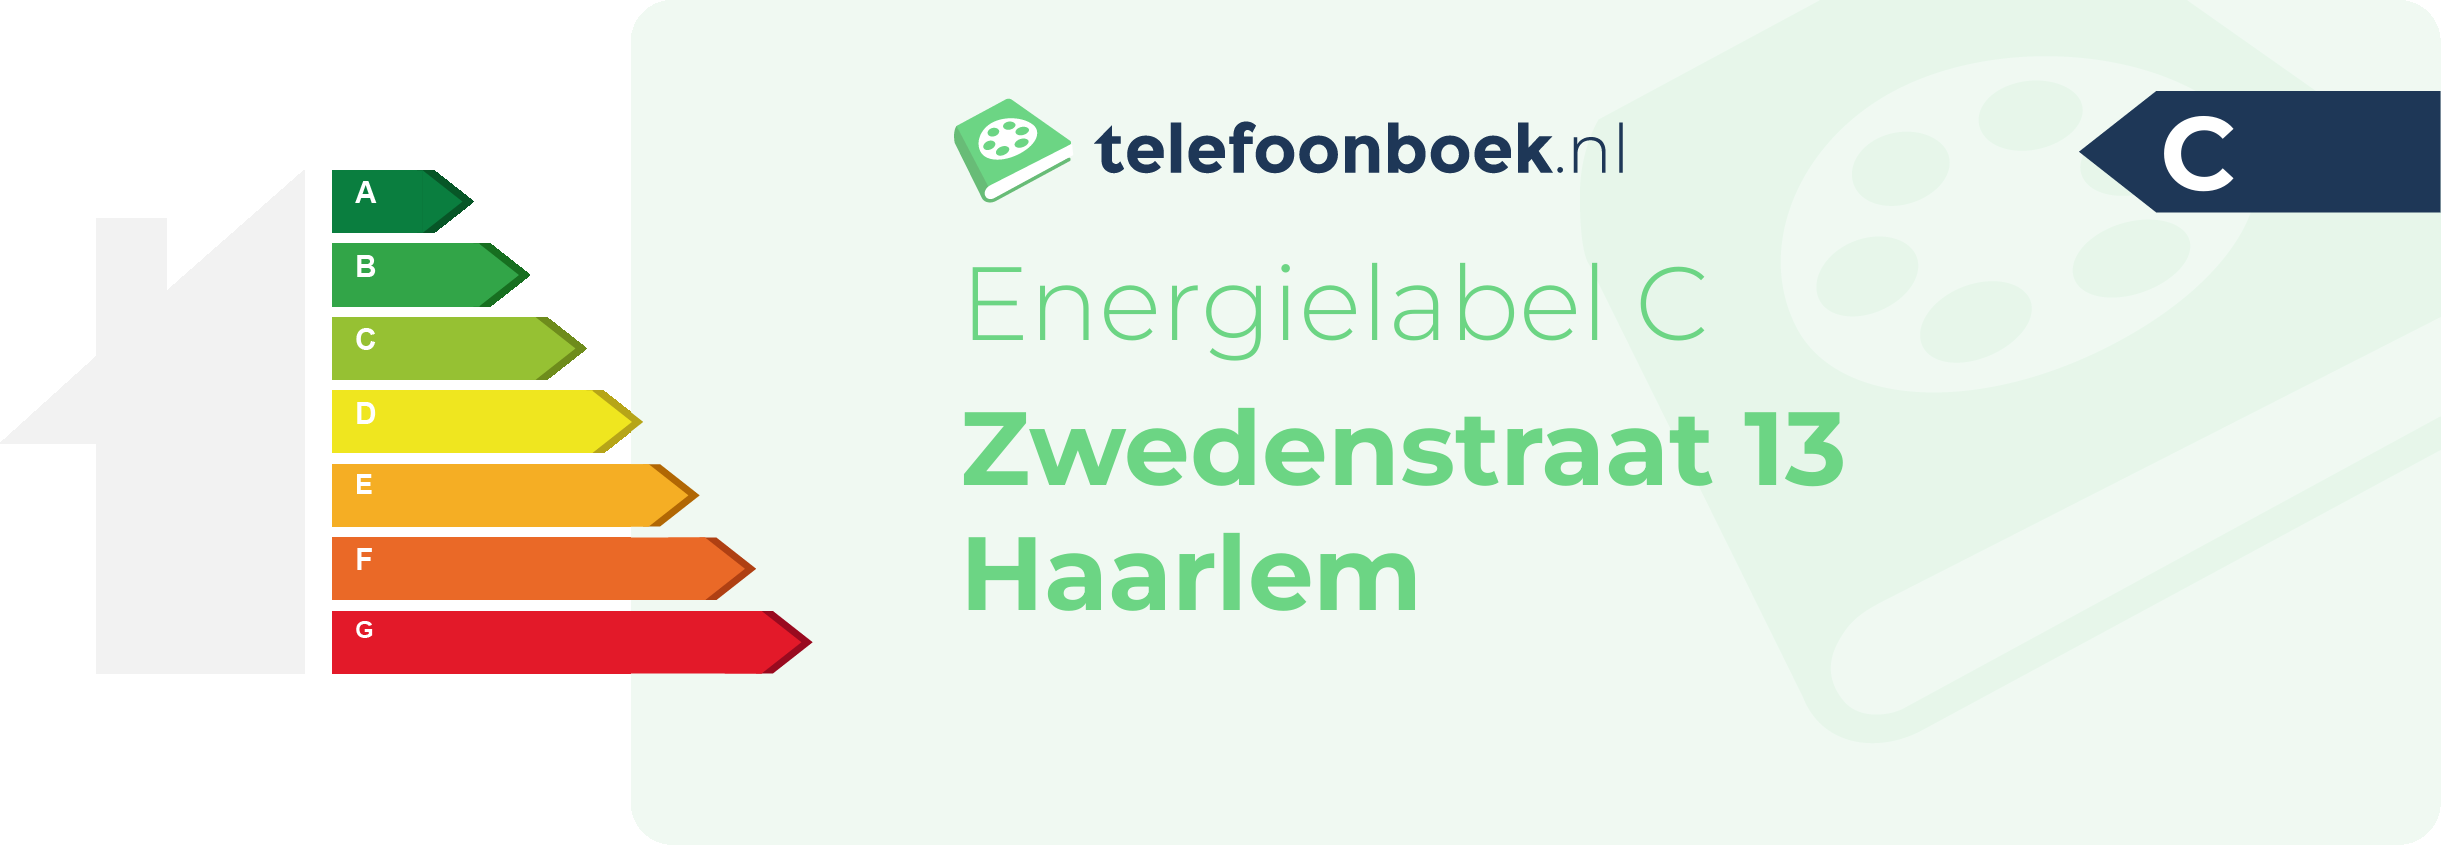 Energielabel Zwedenstraat 13 Haarlem